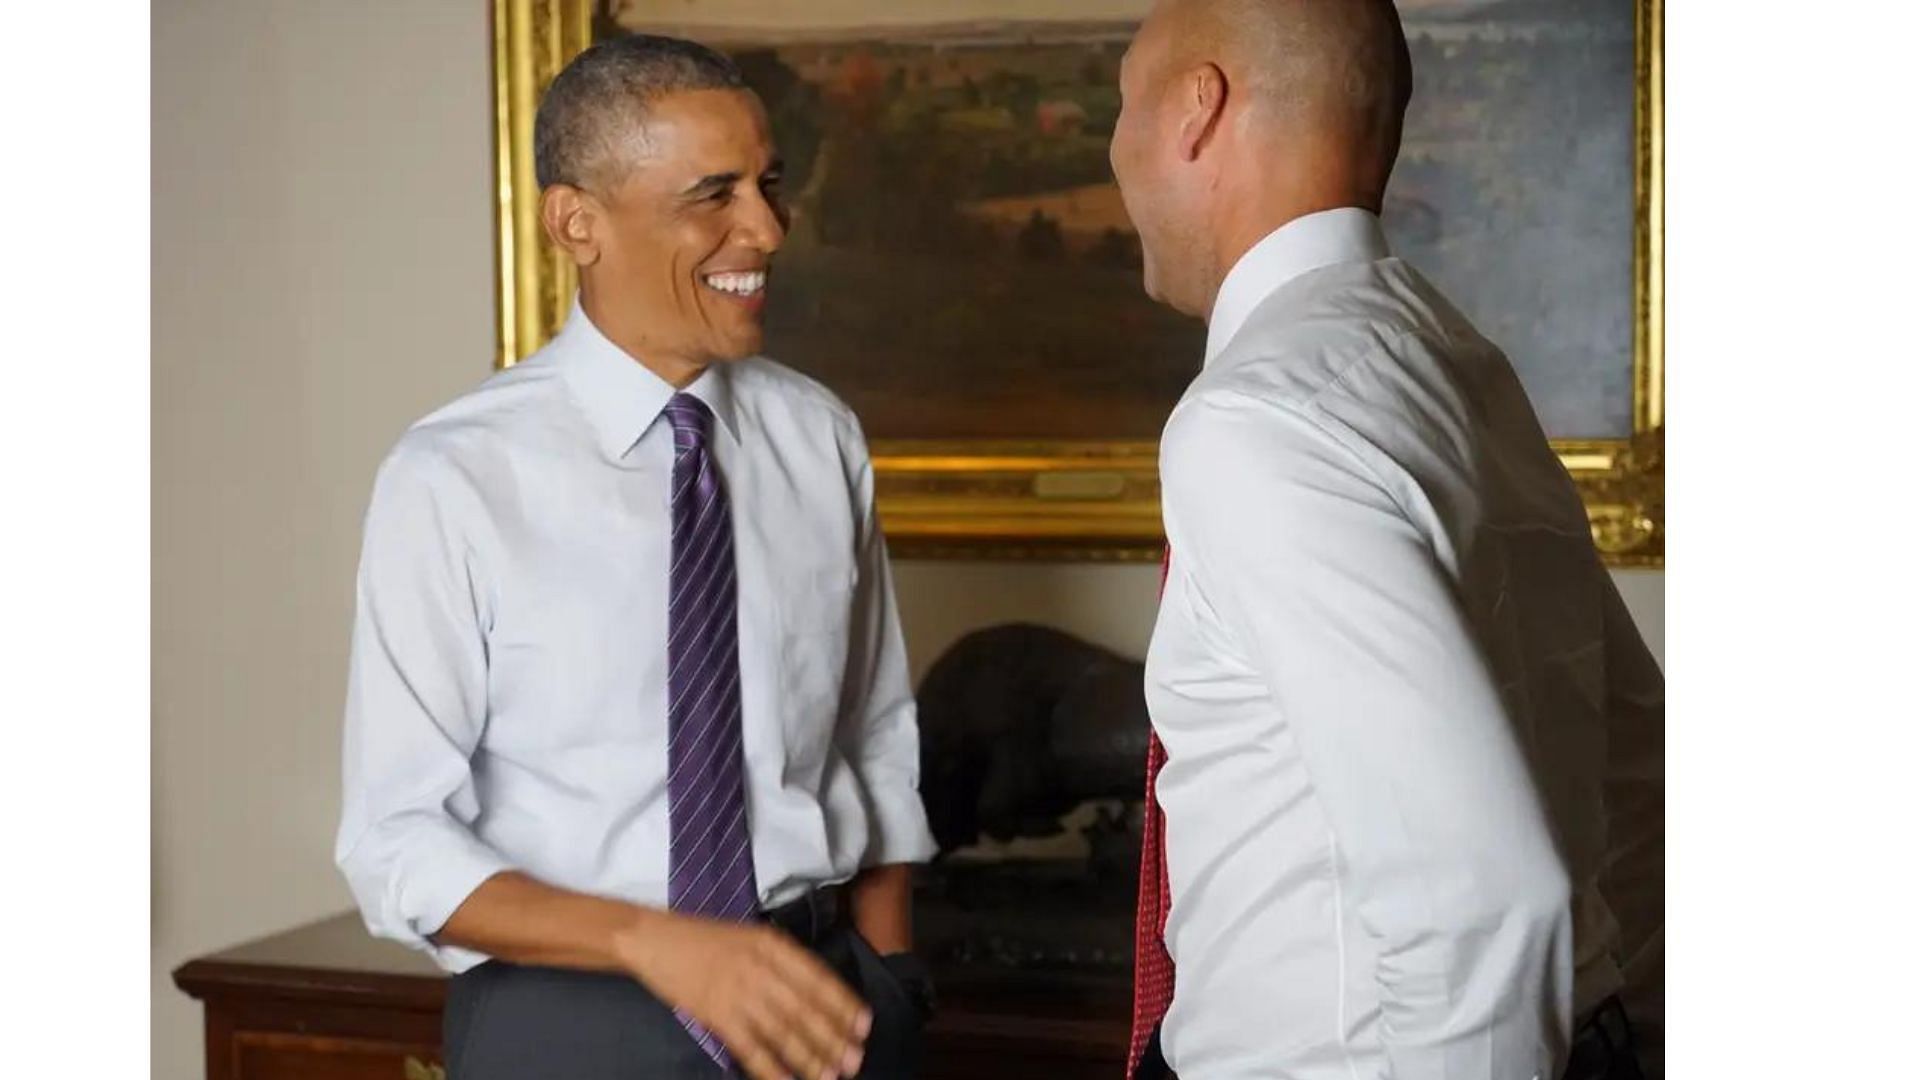 Derek Jeter and former President Barack Obama at the White House